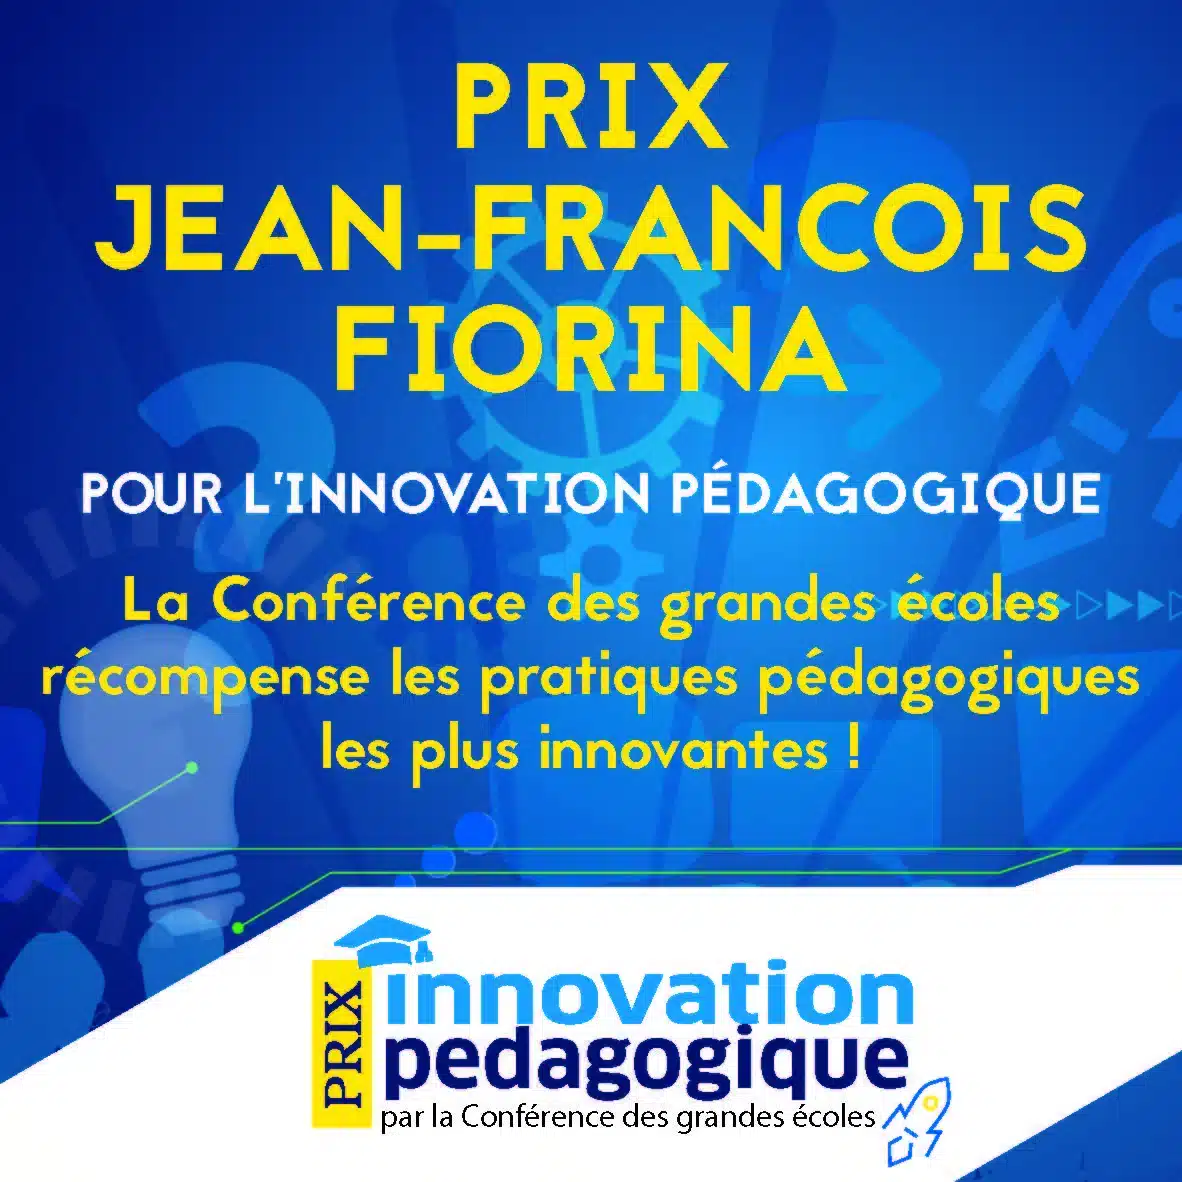 Découvrez les lauréats de la 2e édition du Prix Jean-Francois Fiorina pour l’innovation pedagogique !